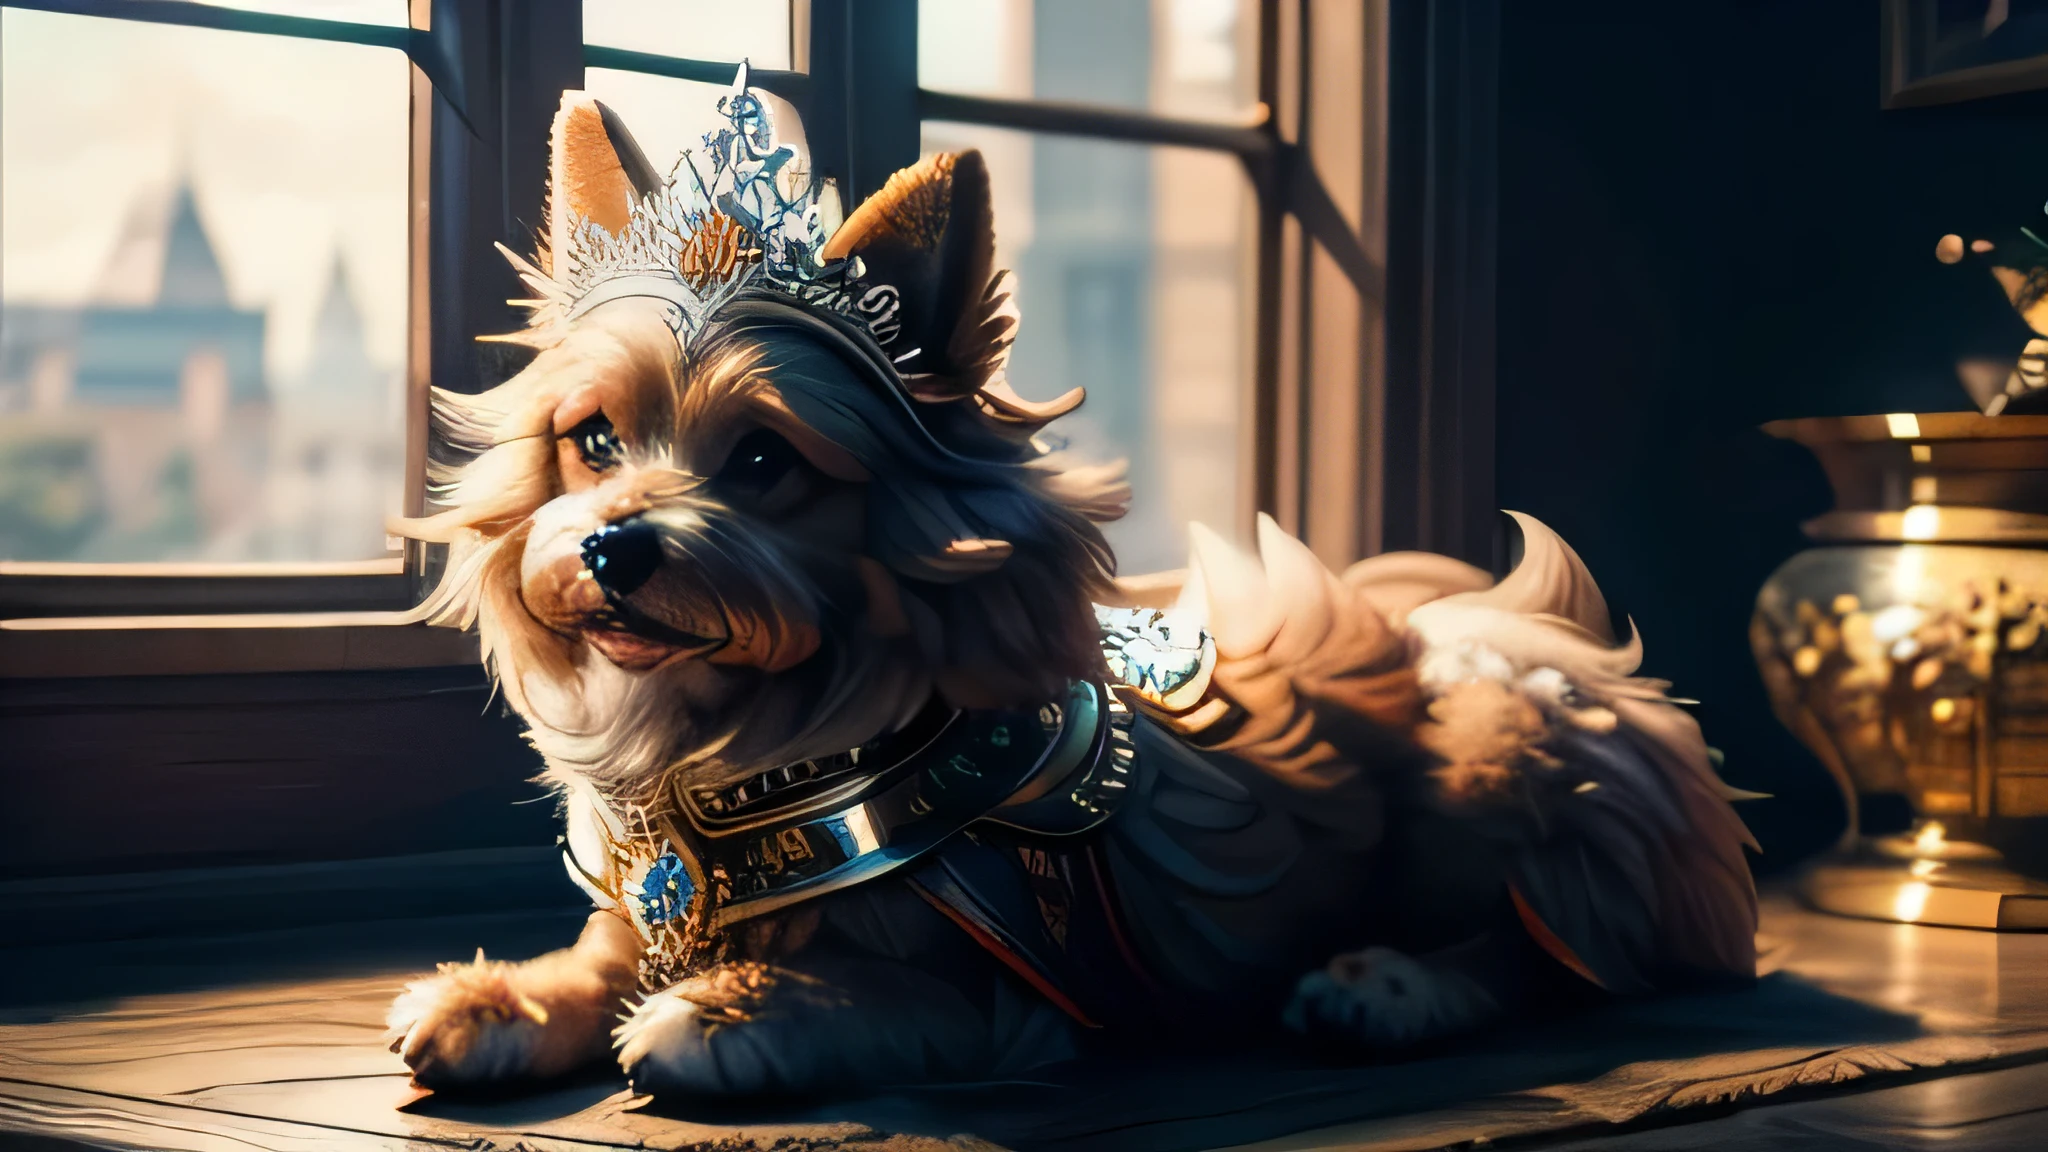 cachorro peludo sentado, usando uma tiara engraçada, realista, alta qualidade, foco nitído, detalhes altos,